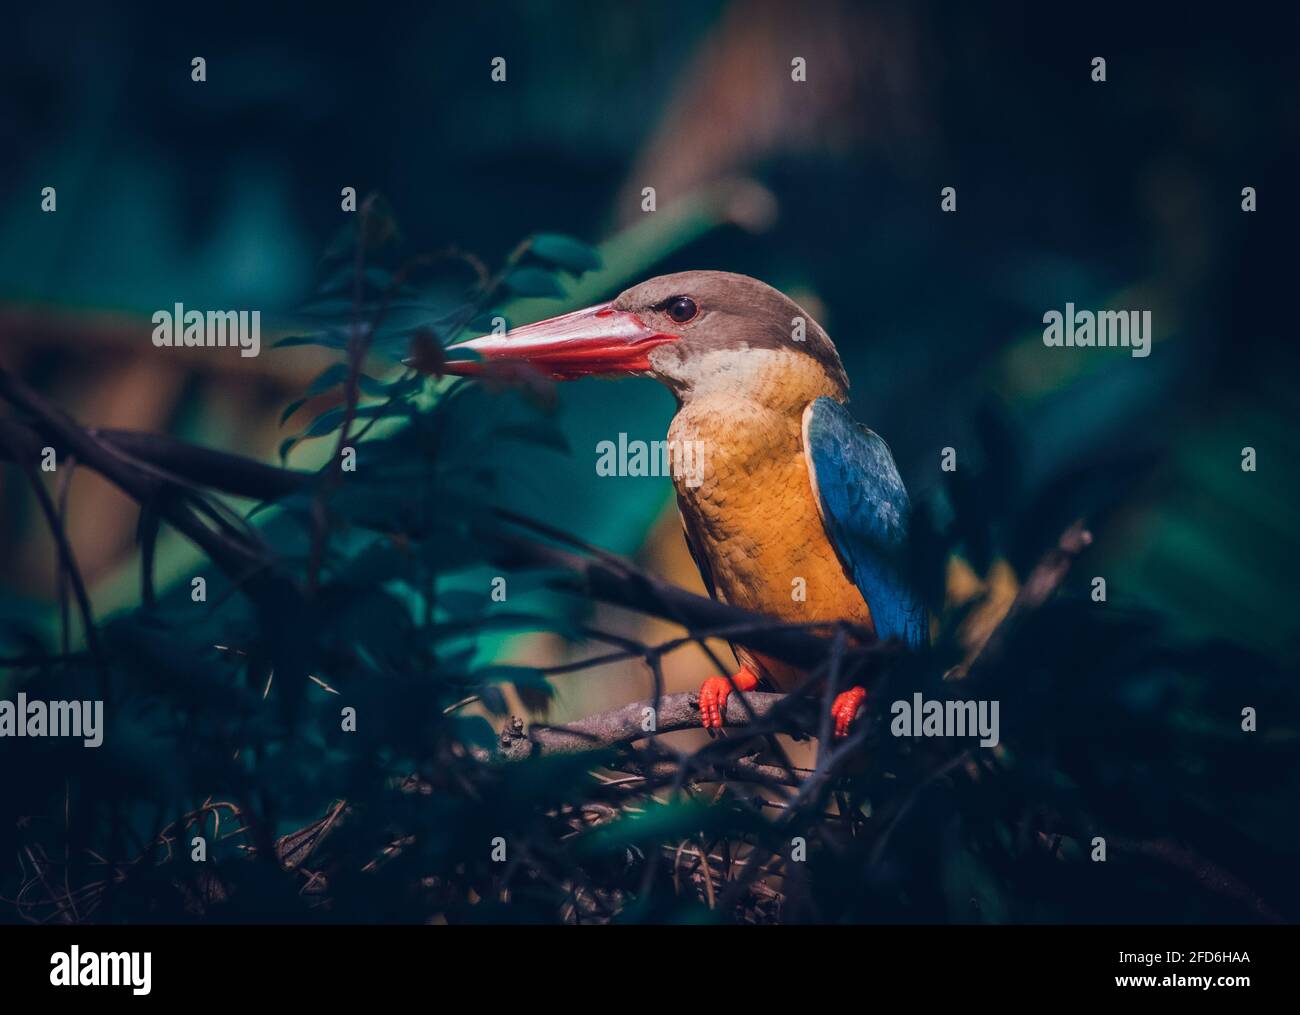 Storchschnabel-Eisvögel auf einem Buschzweig, entspannt und wachsam zugleich. Nahaufnahme Vogelporträt. Stockfoto